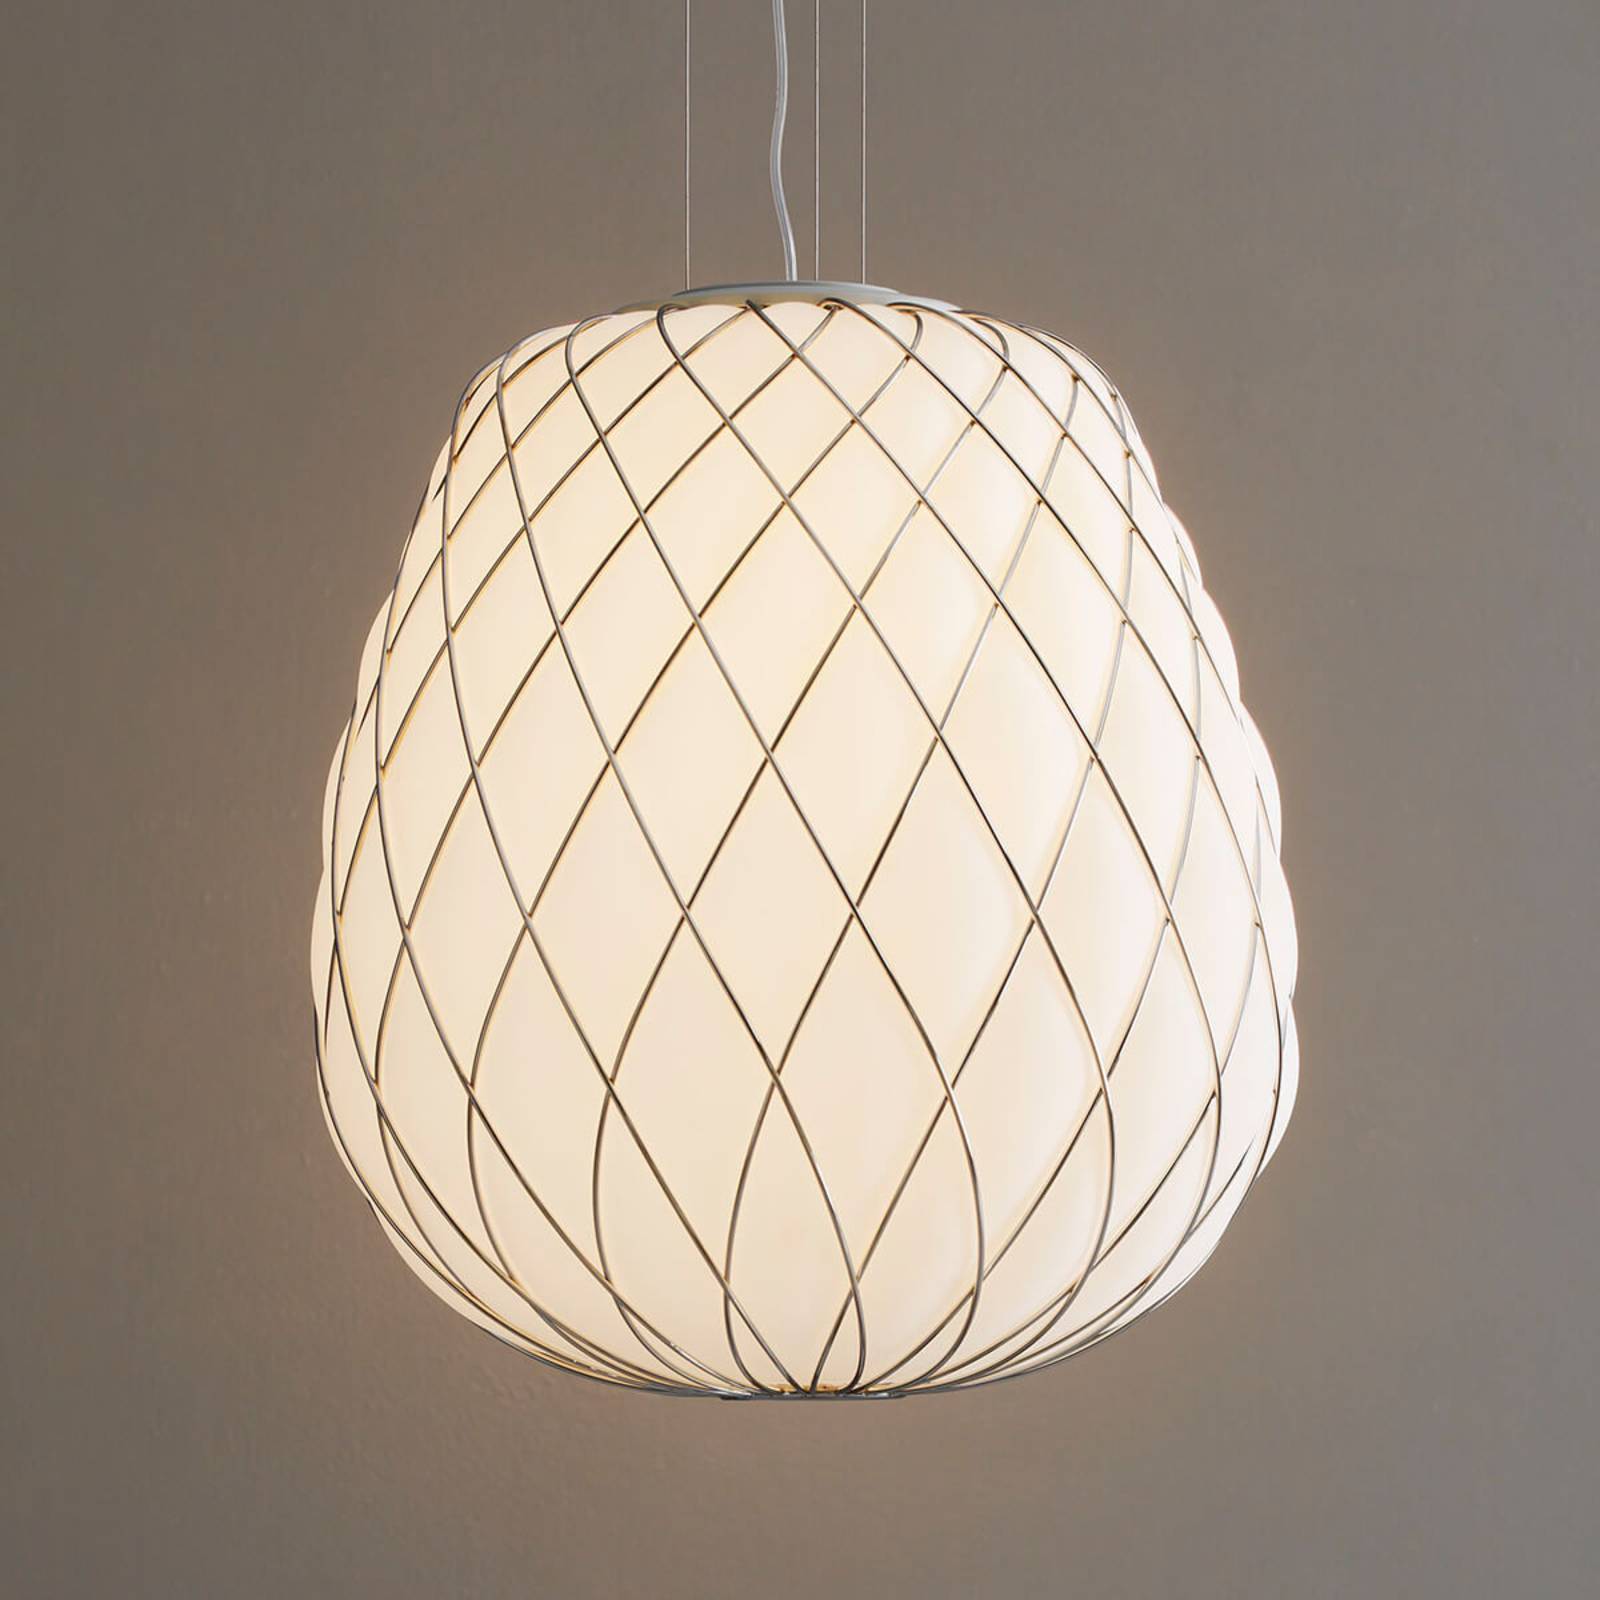 Verandert in Opknappen een beetje Pinecone - design hanglamp van melkglas | Lampen24.nl